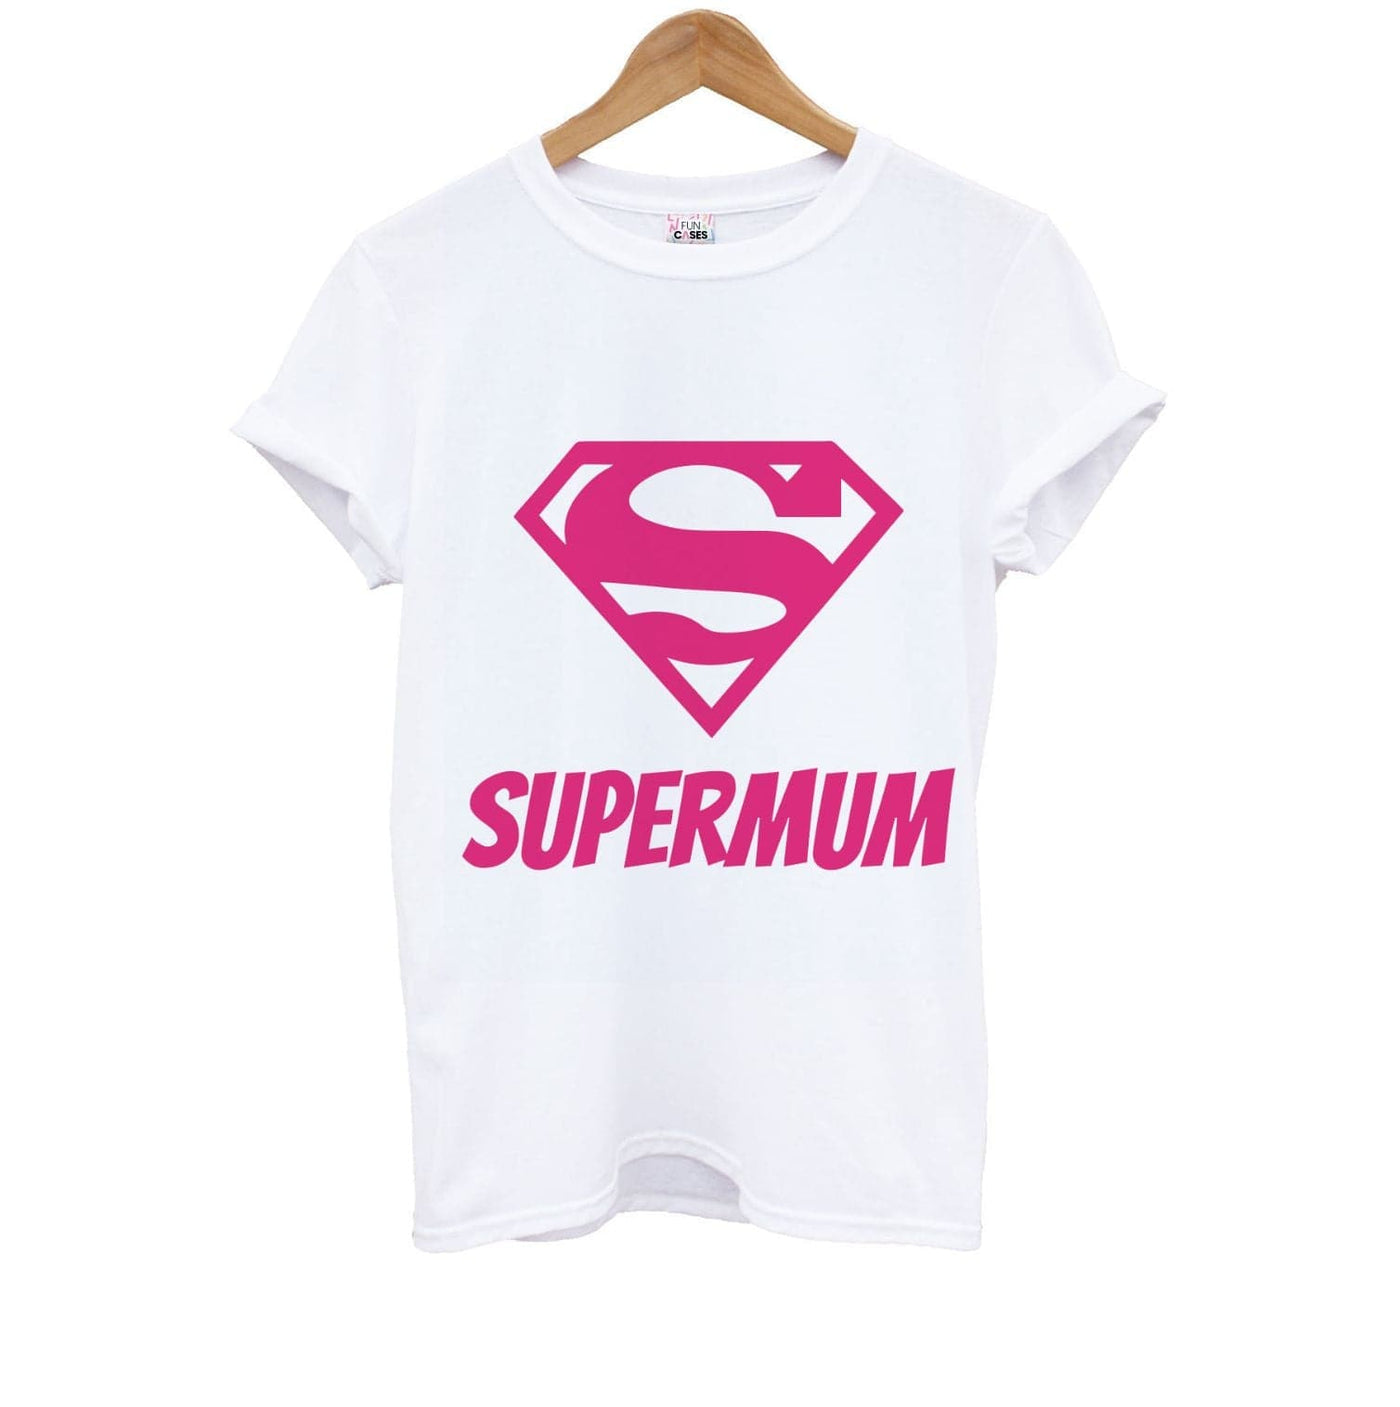 Super Mum - Mothers Day Kids T-Shirt